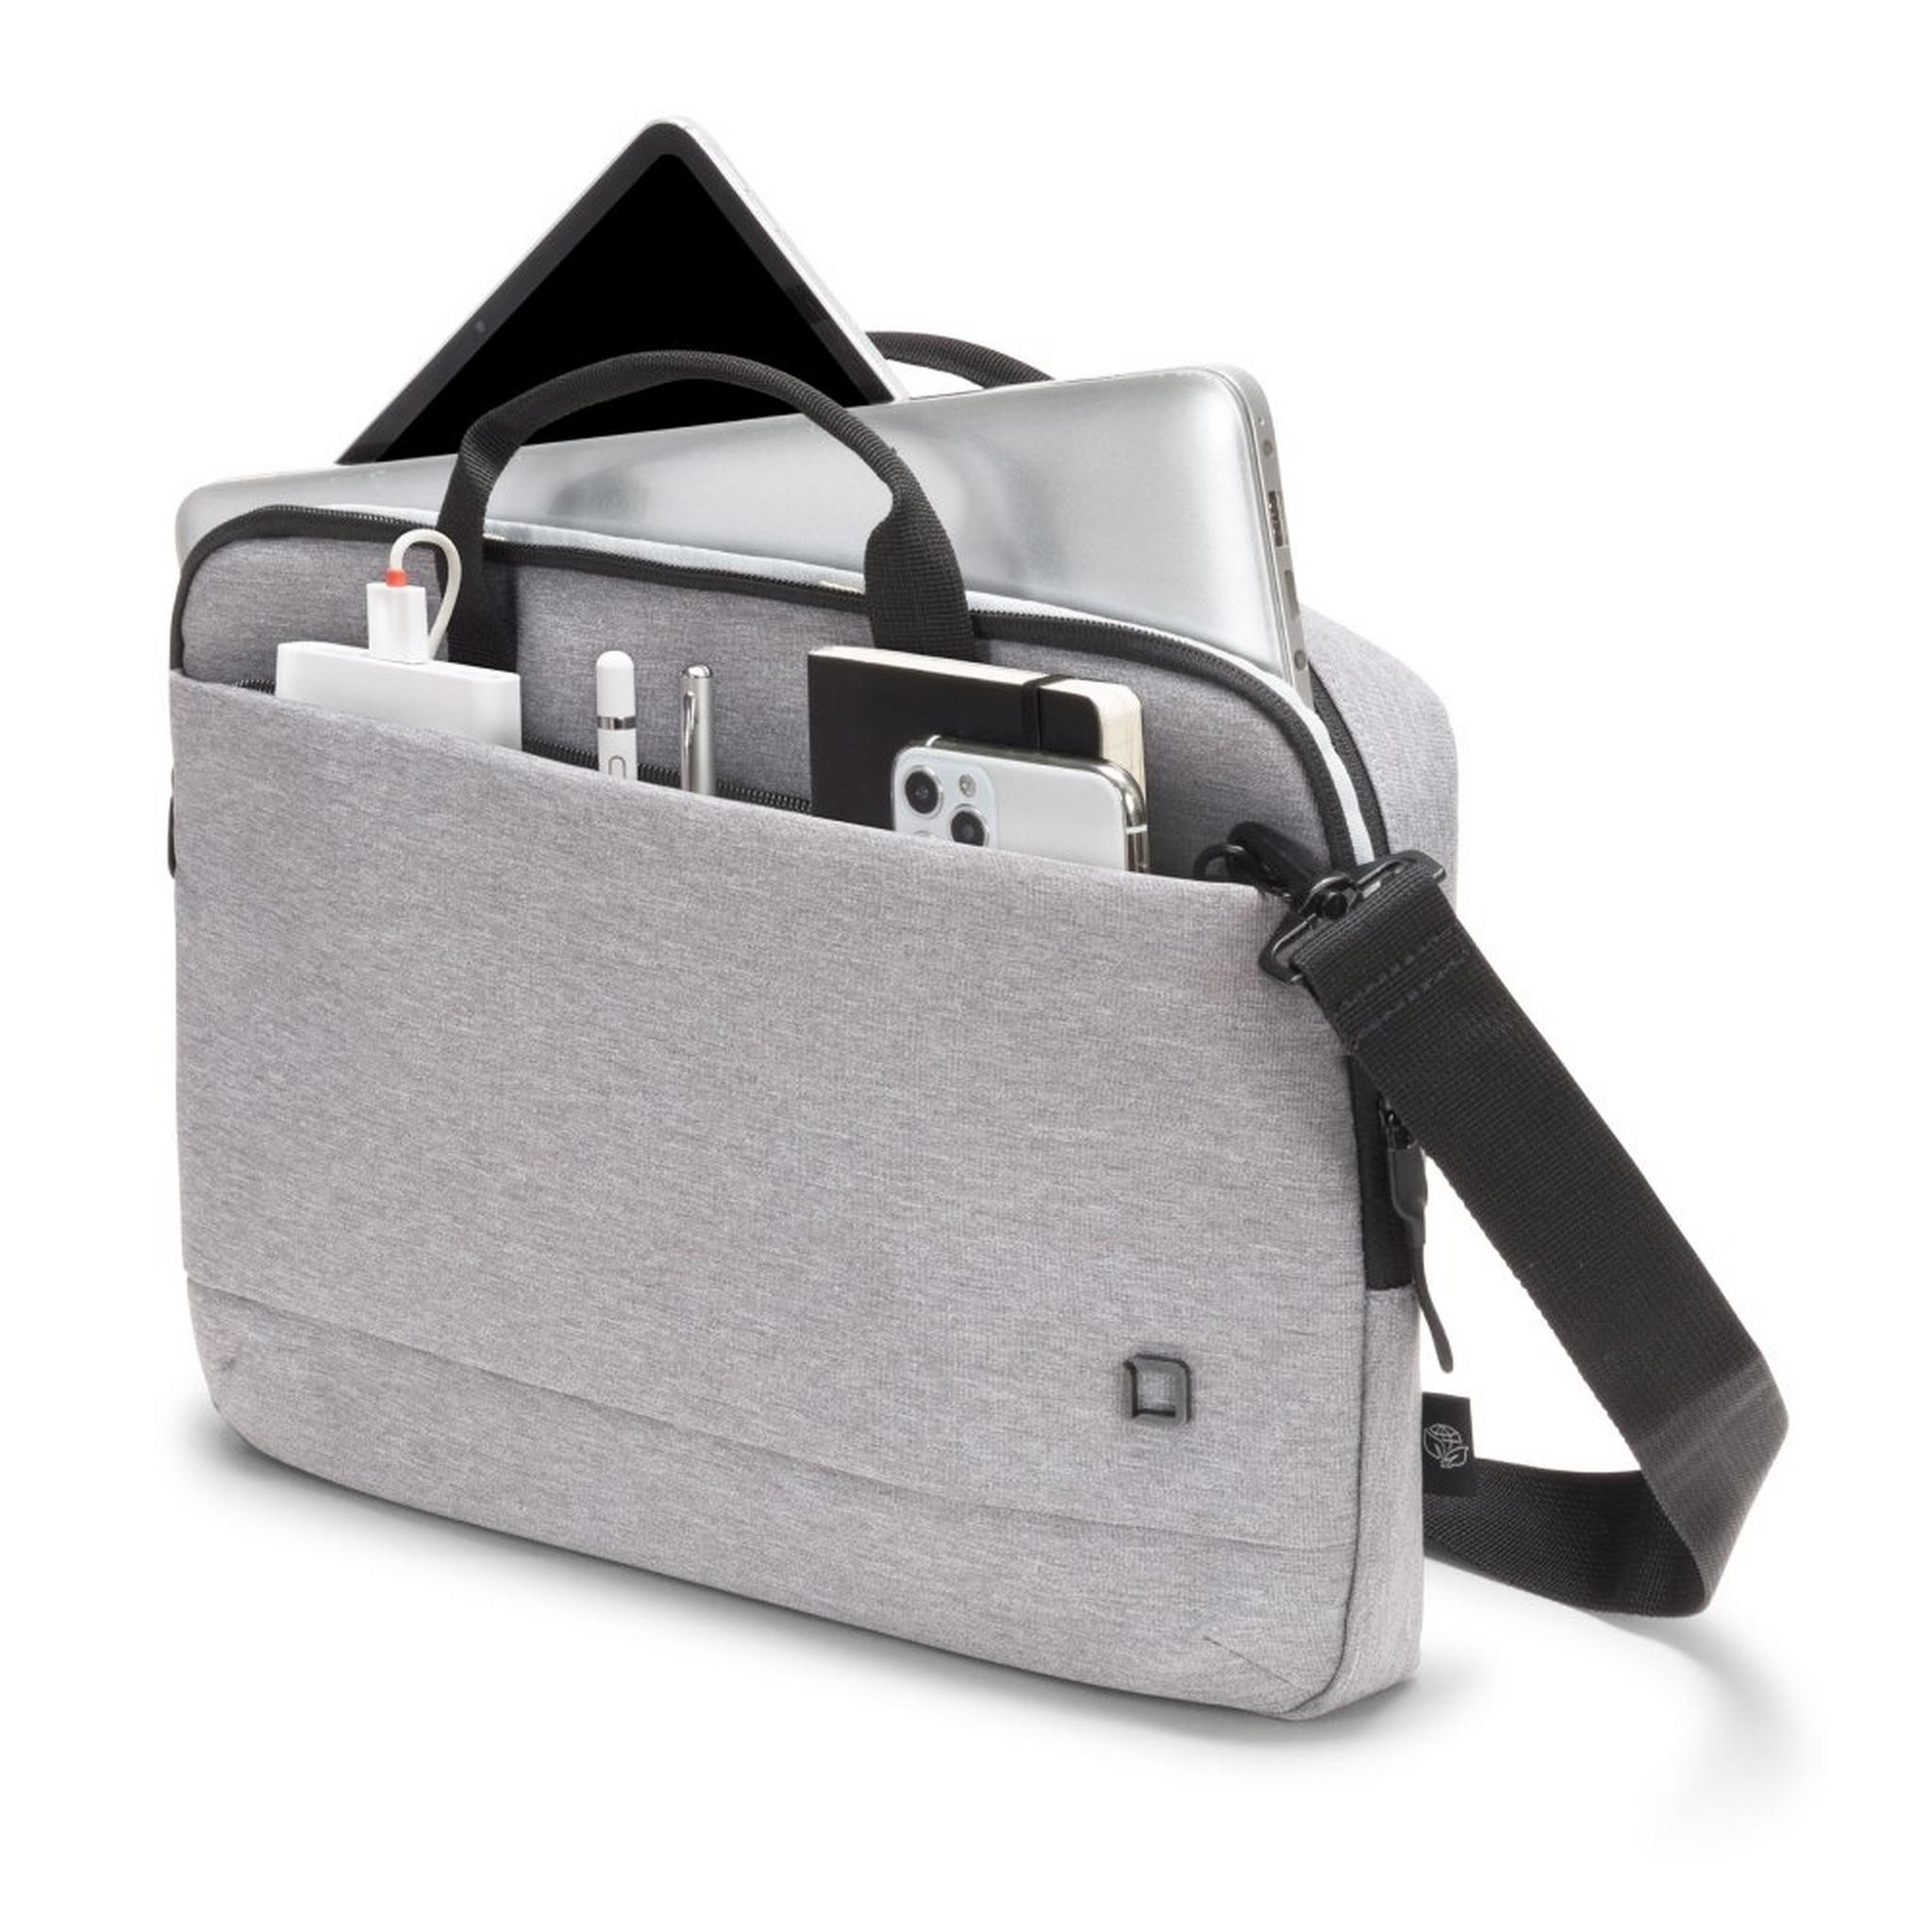 حقيبة ايكو سليم موشن للابتوب بحجم 13.3 بوصة من ديكوتا - رمادي